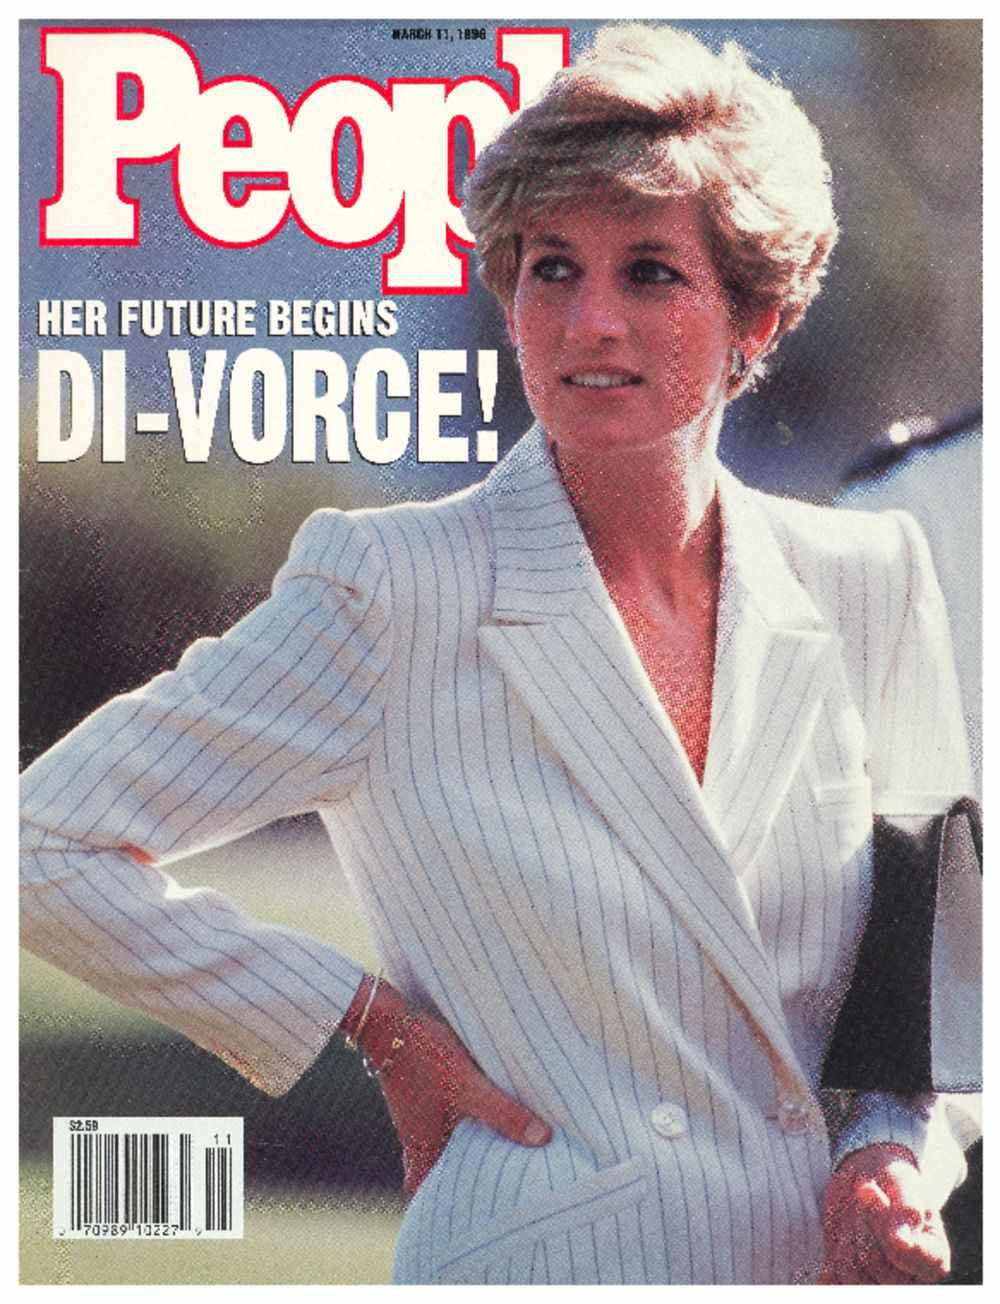 March 11, 1996: DI-VORCE! Her Future Begins